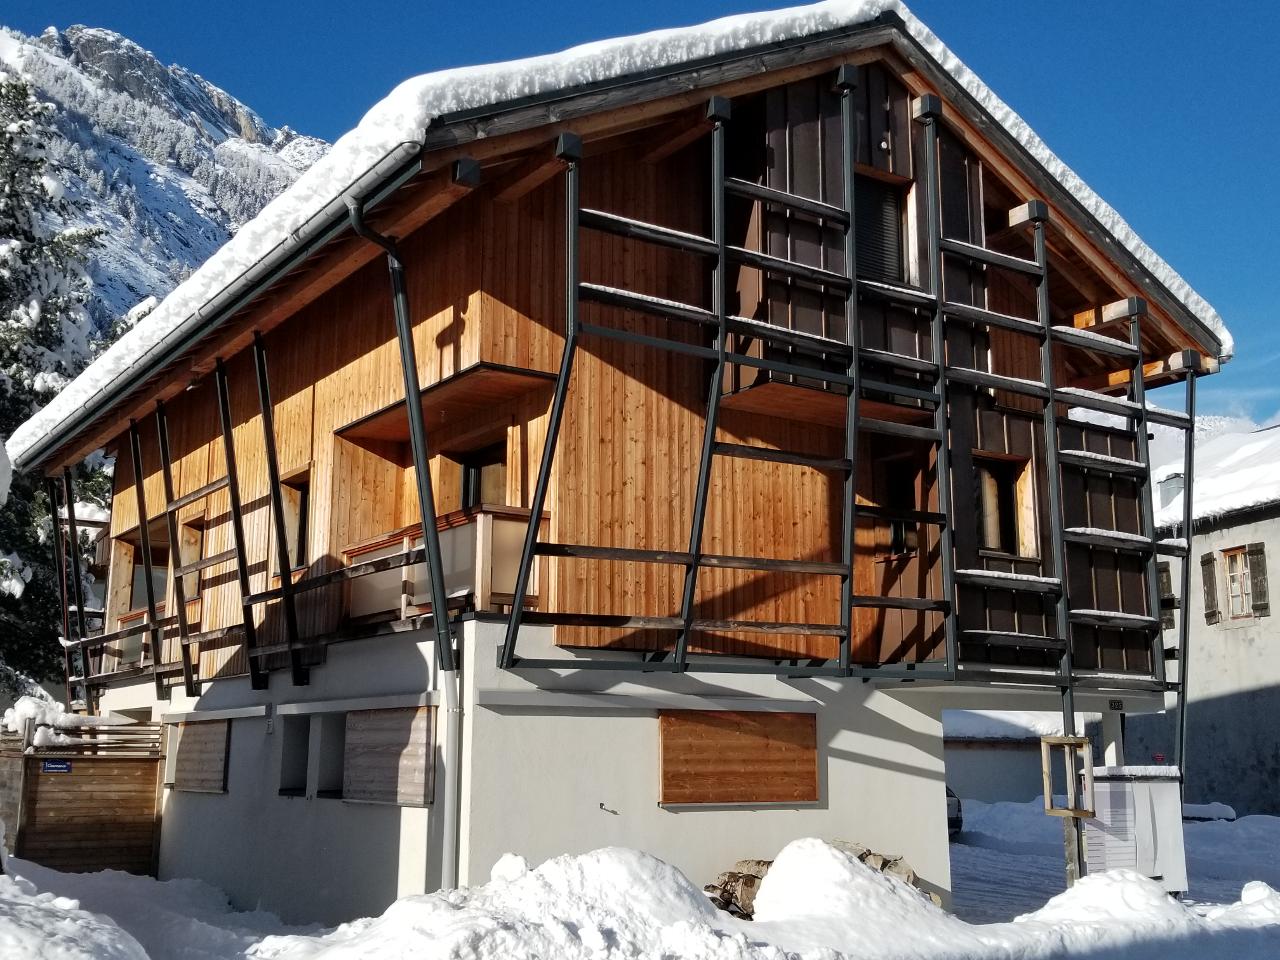 Hôte GreenGo: CHALET WALSER le seul chalet écolo de la vallée de Chamonix Mont Blanc - Image 2